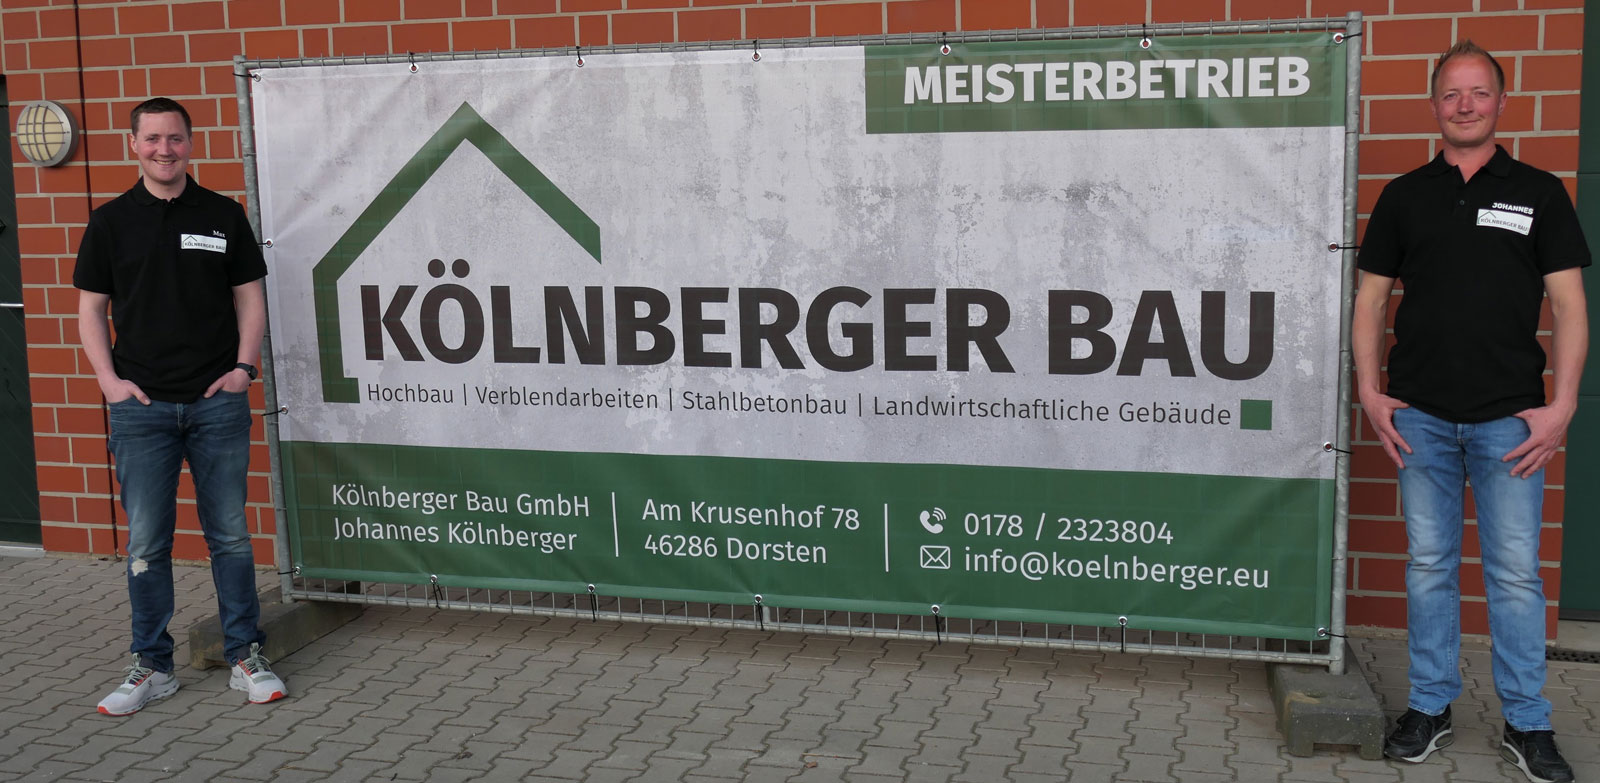 Mitarbeiter - Kölnberger Bau GmbH aus Dorsten